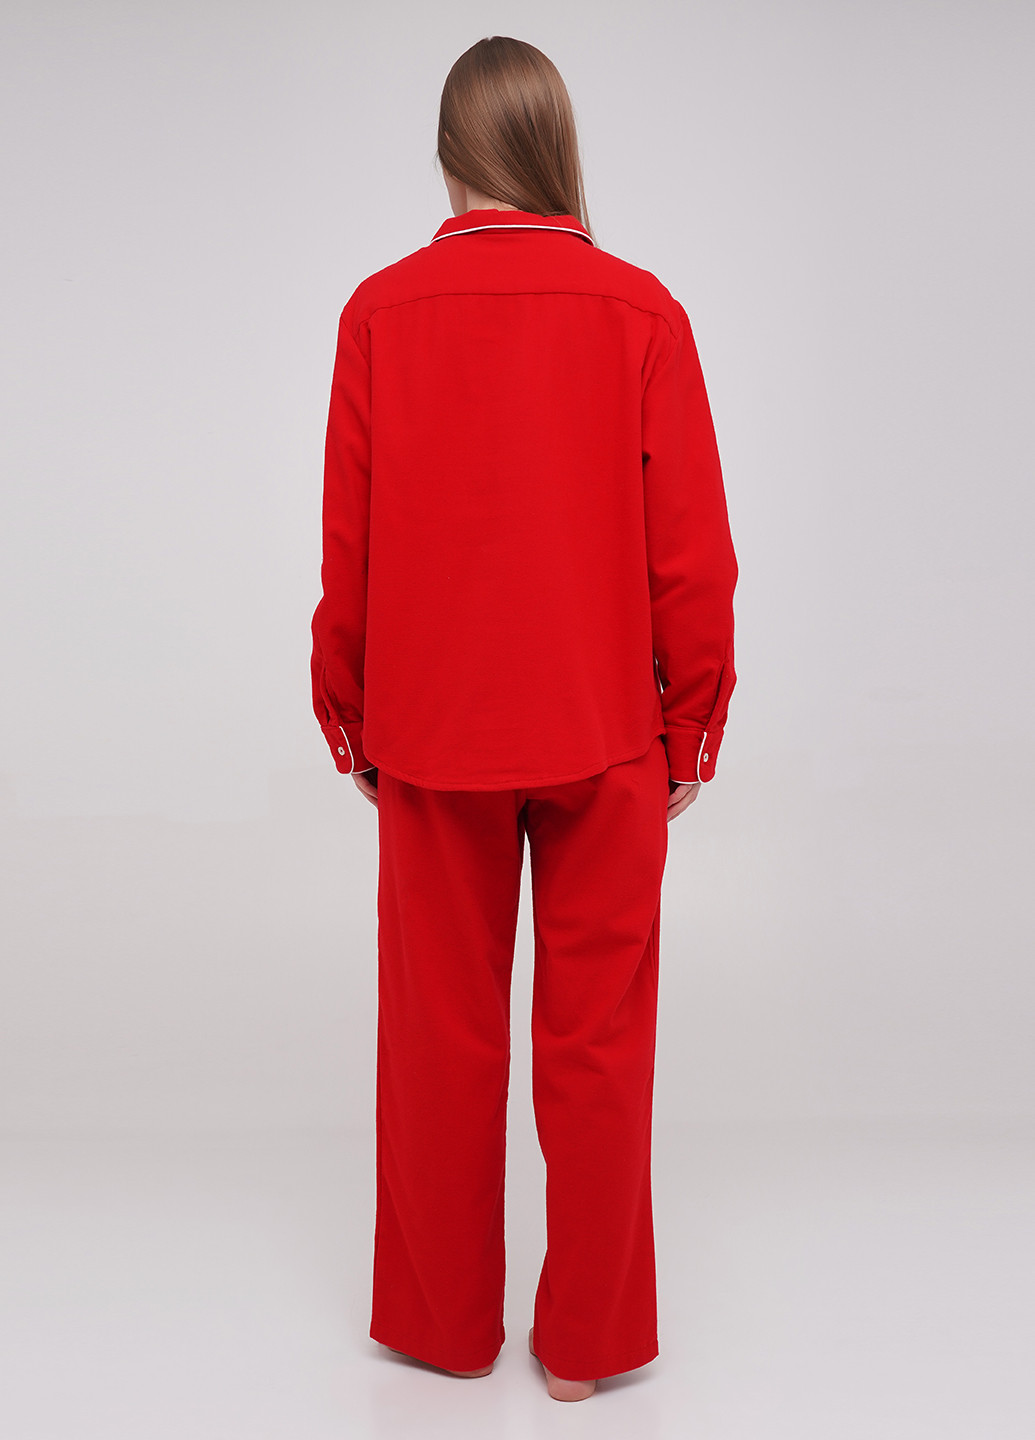 Красная всесезон пижама рубашка + брюки MOONS